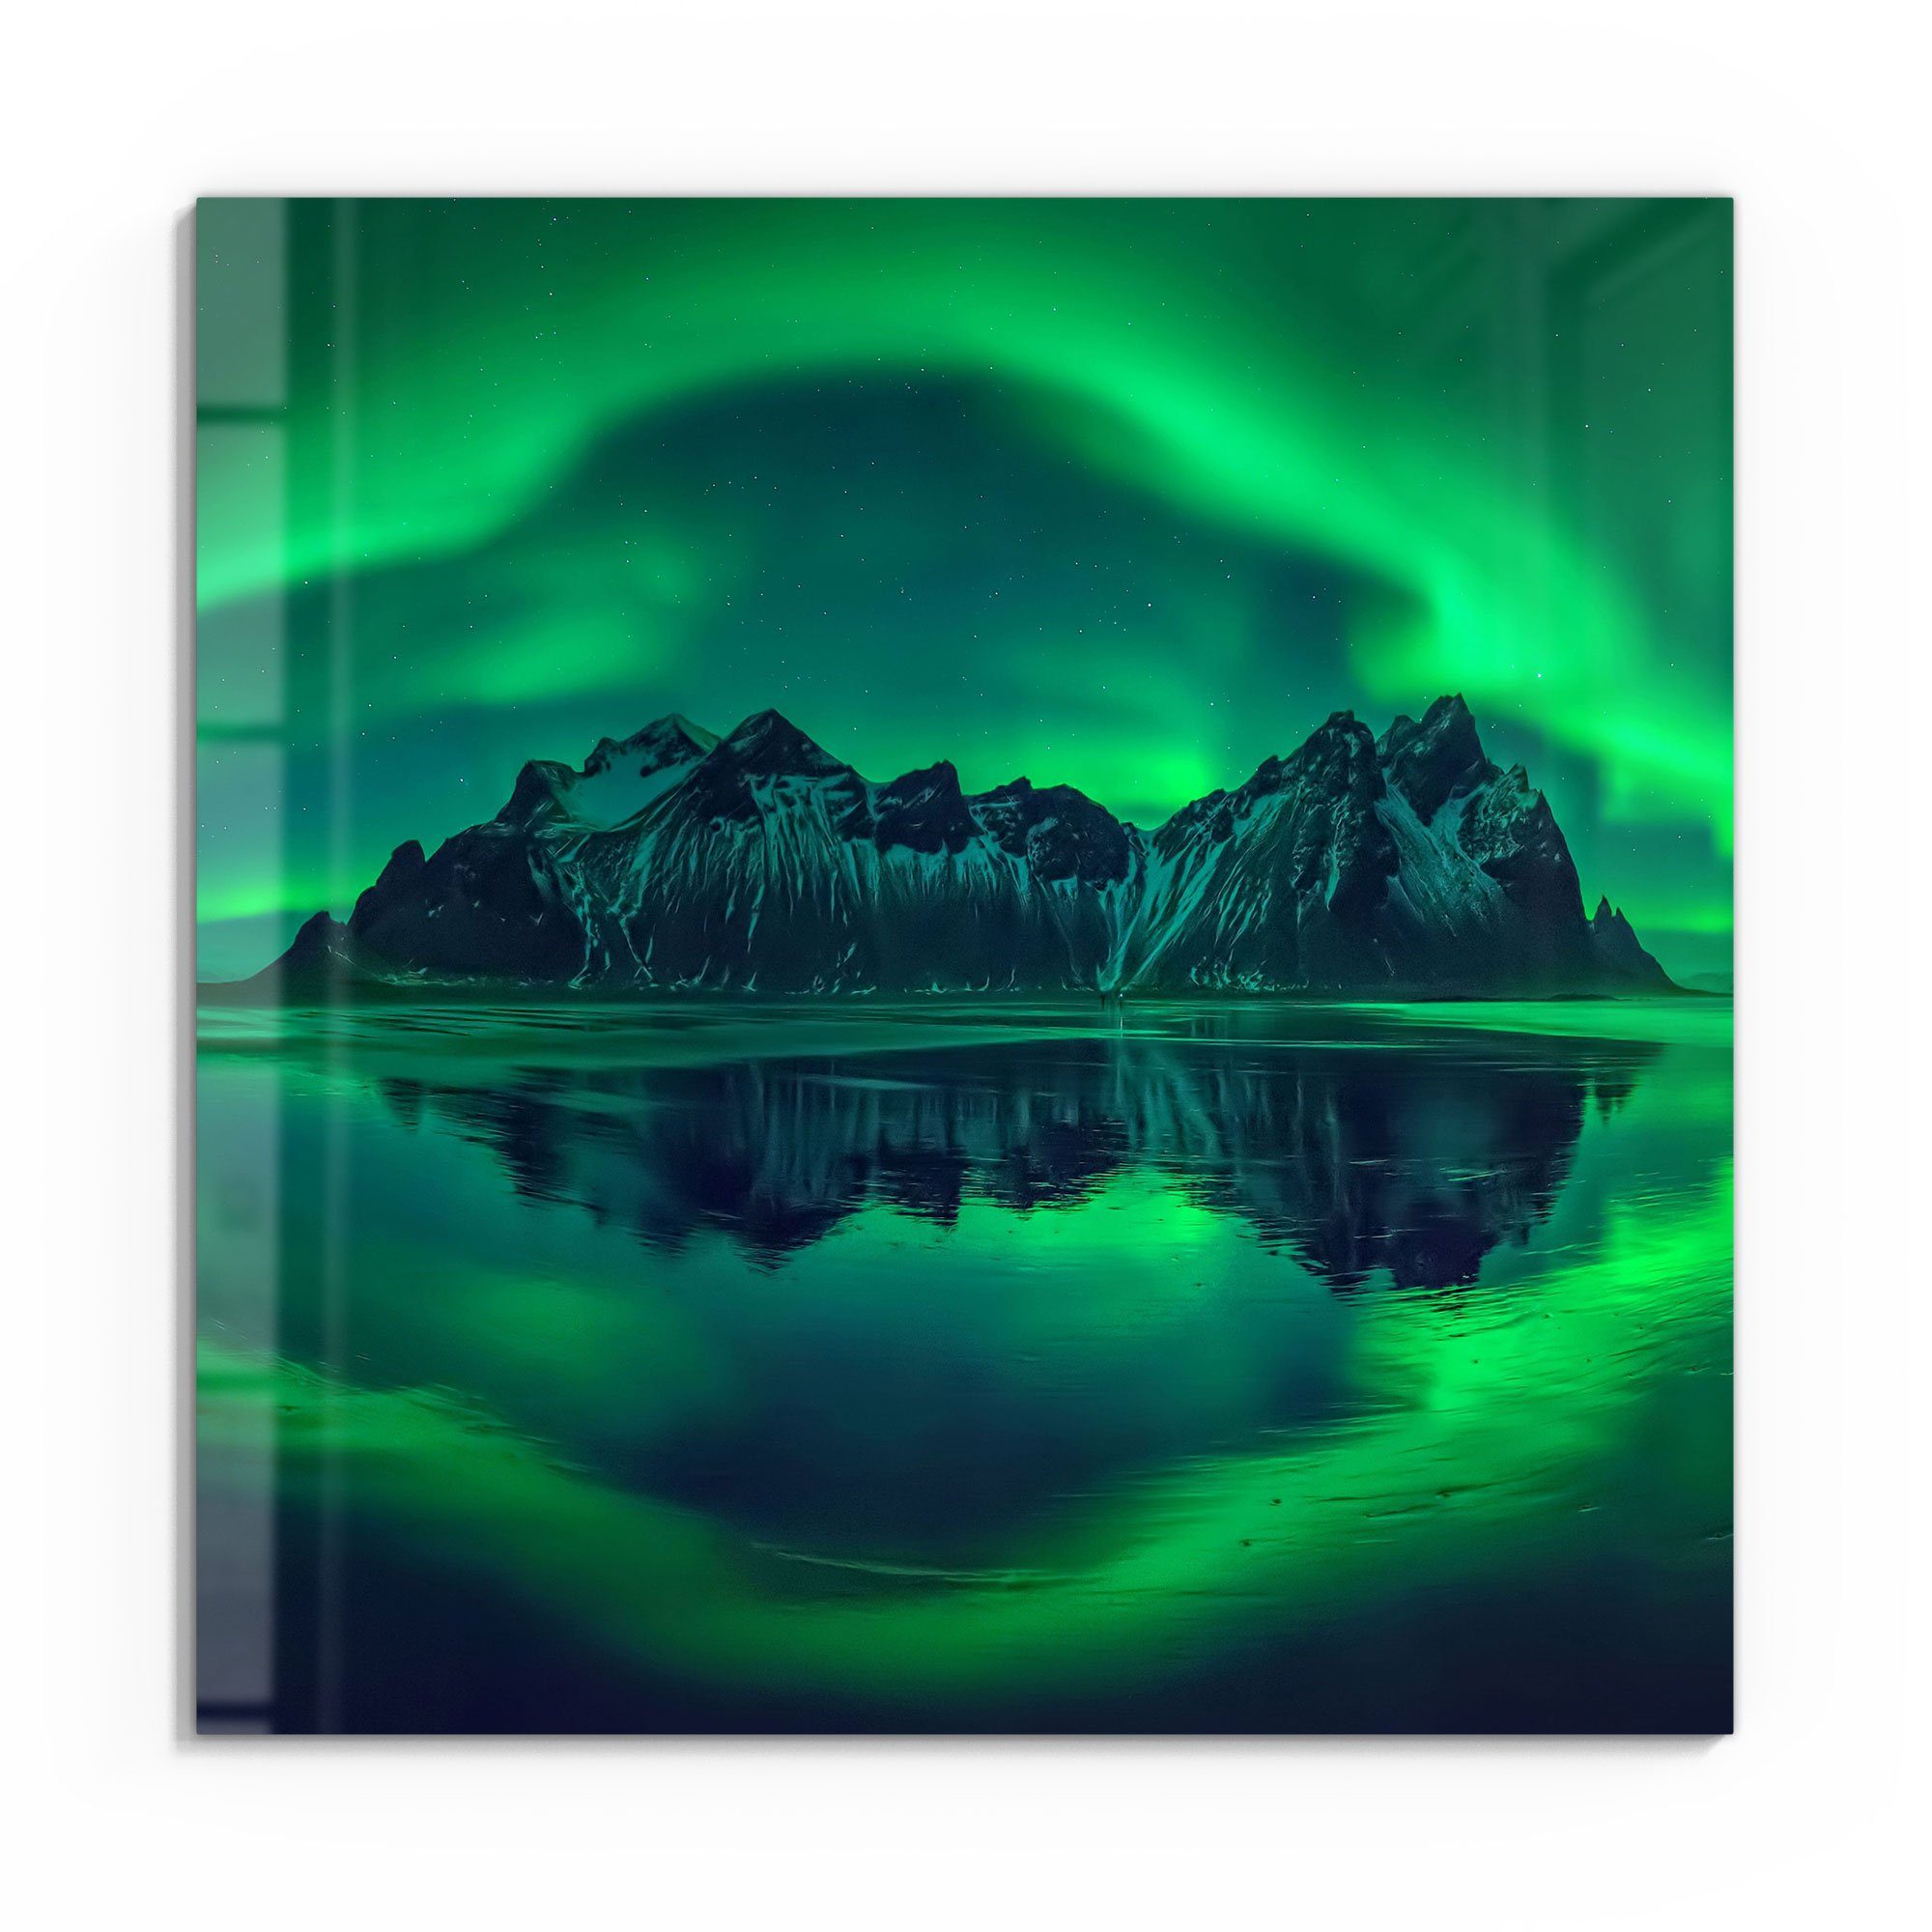 DEQORI Glasbild \'Vestrahorn im modern Bild Wandbild Polarlicht\', schwebend im Glas \'Vestrahorn Polarlicht